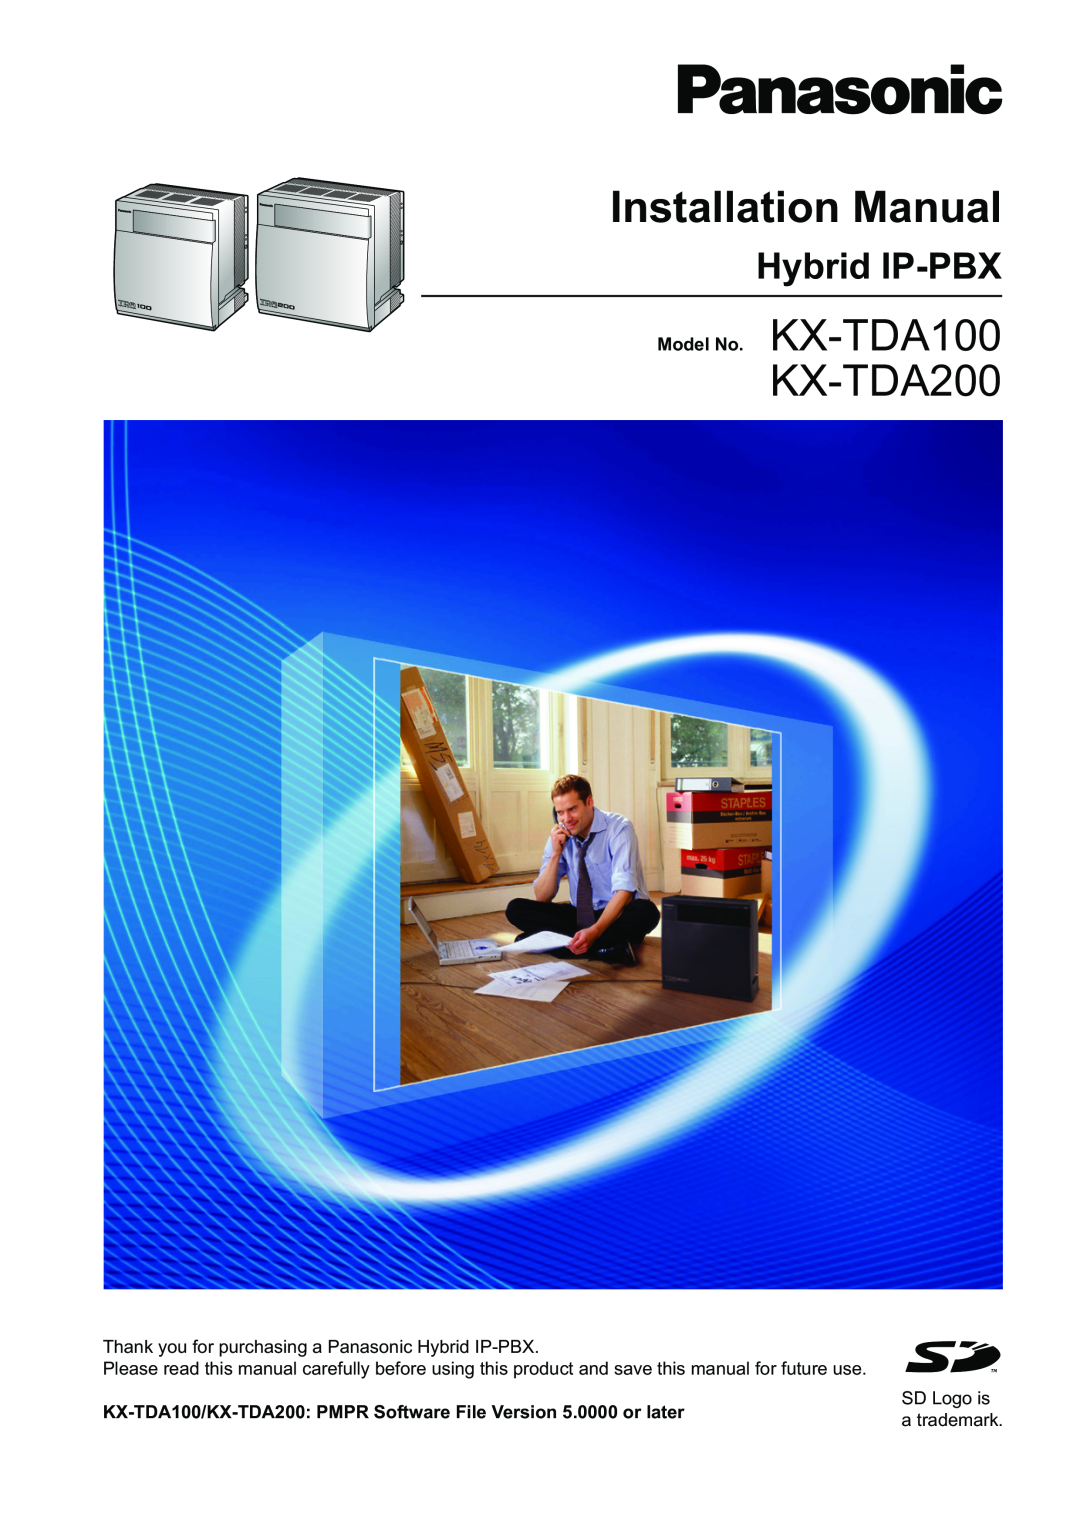 Panasonic manual KX-TAW848/KX-TDA50 Model KX-TDA100/KX-TDA200, Hybrid IP-PBX, User Guide for KX-TD7896 